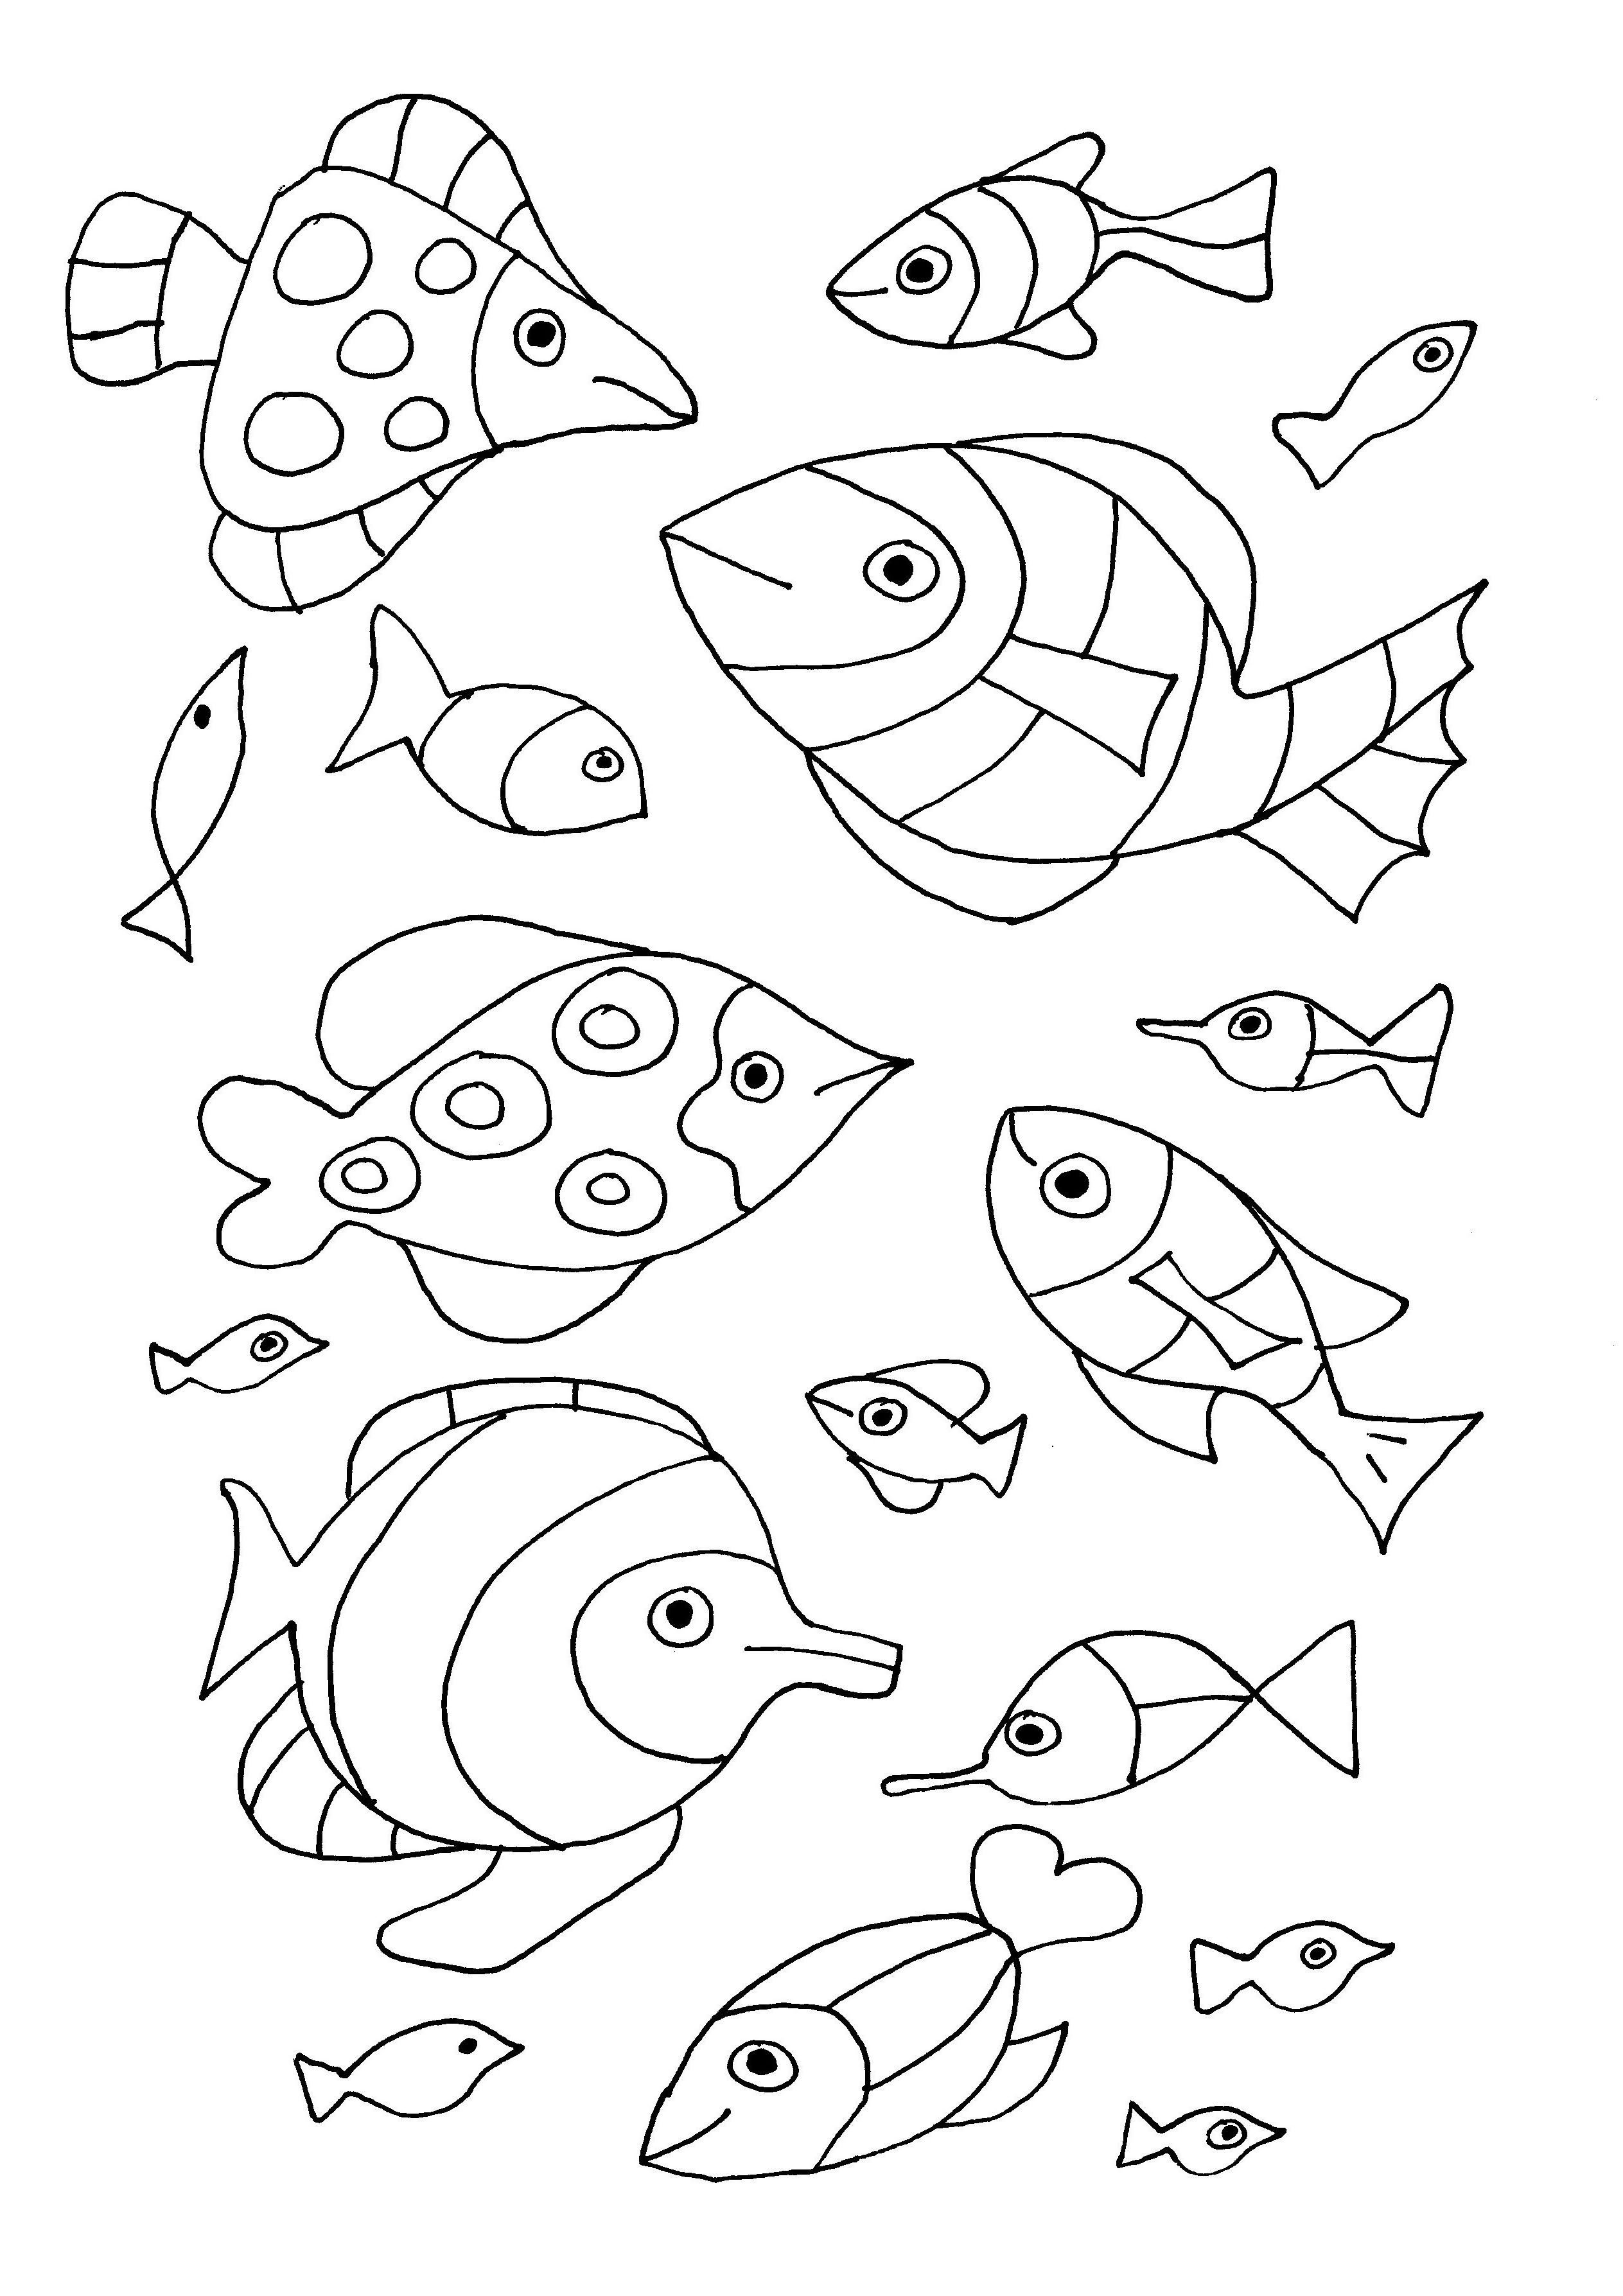 Раскраска рыбки для детей 5 6 лет. Аквариумные рыбки раскраска. Раскраска рыбка. Разные рыбы раскраска. Раскраски рыбы для детей 4-5 лет.